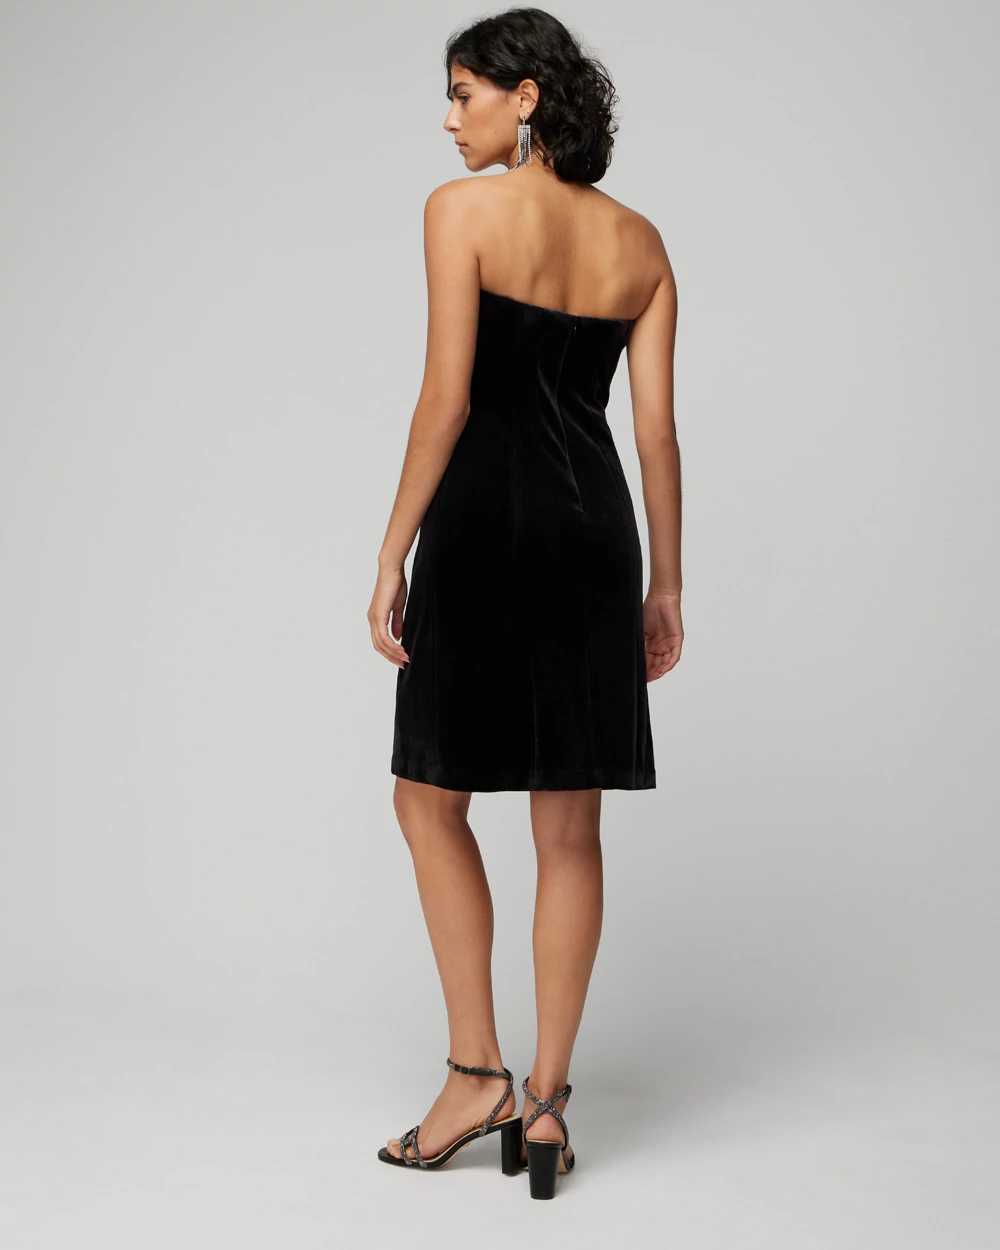 Strapless Velvet Mini Dress click to view larger image.